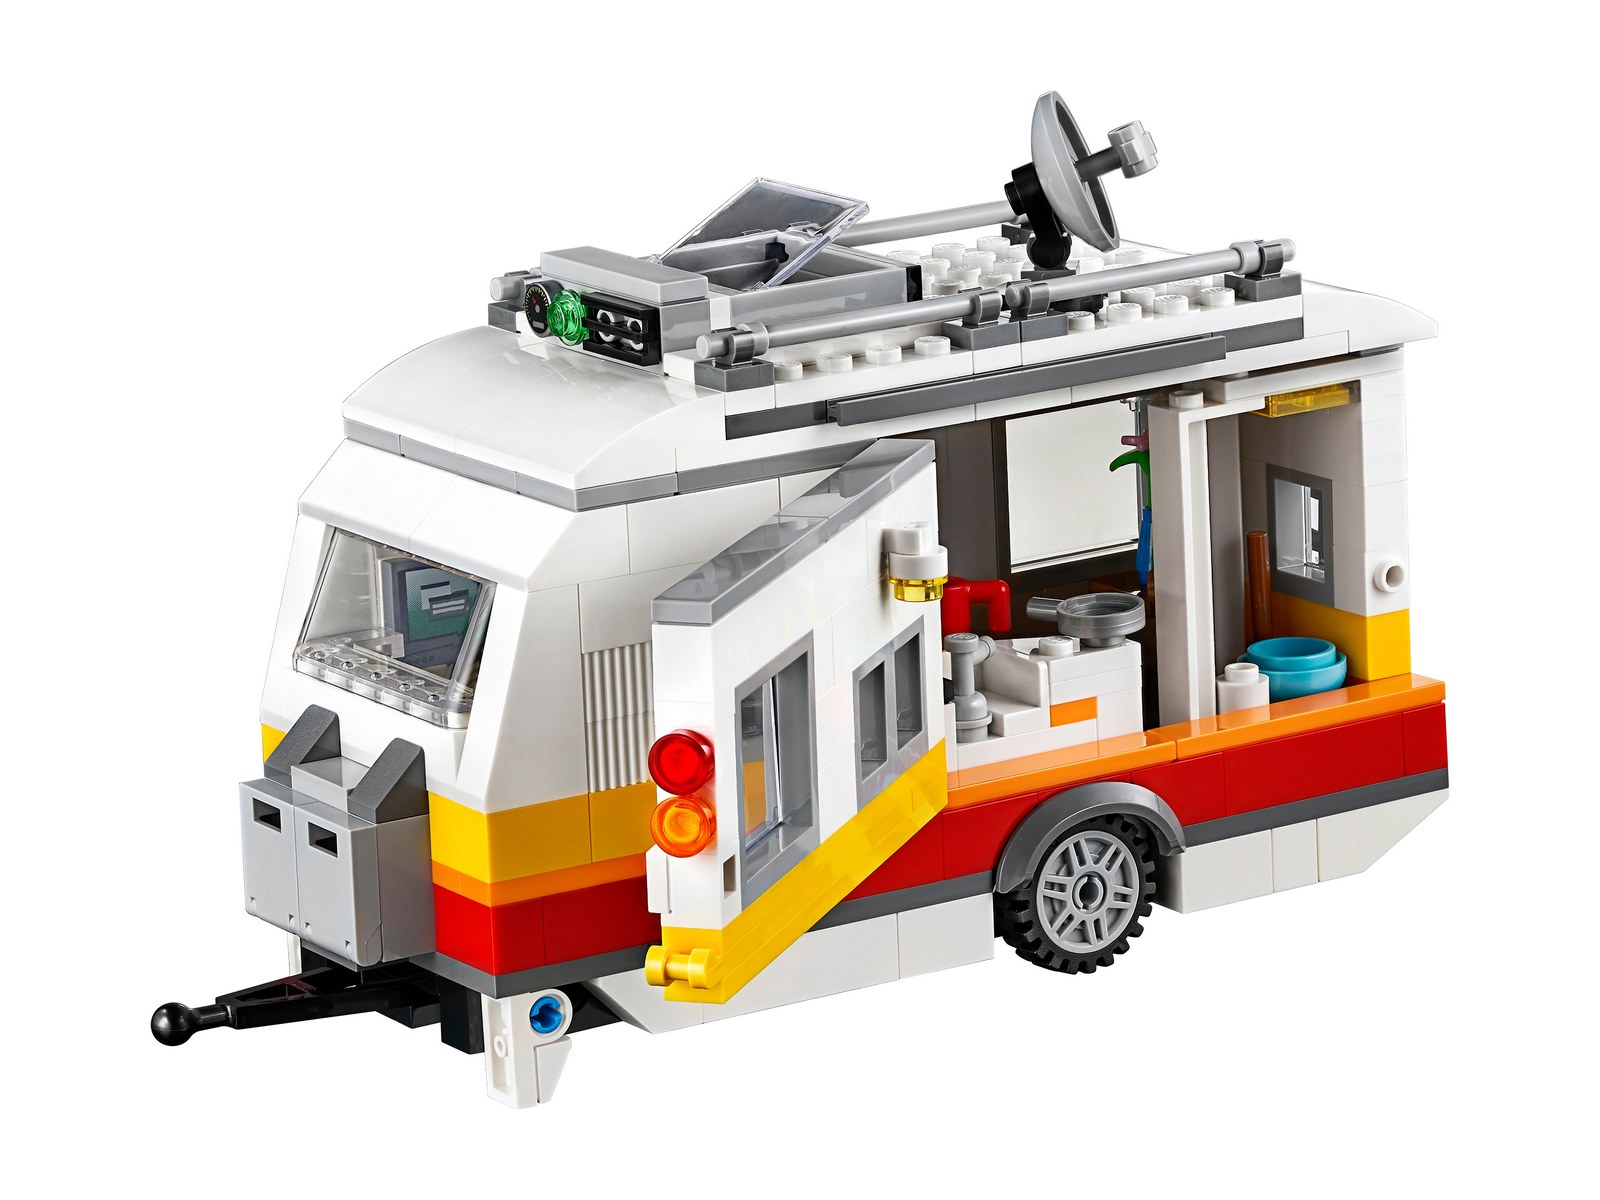 Конструктор LEGO Creator 3в1 «Отпуск в доме на колесах» 31108 / 766 деталей